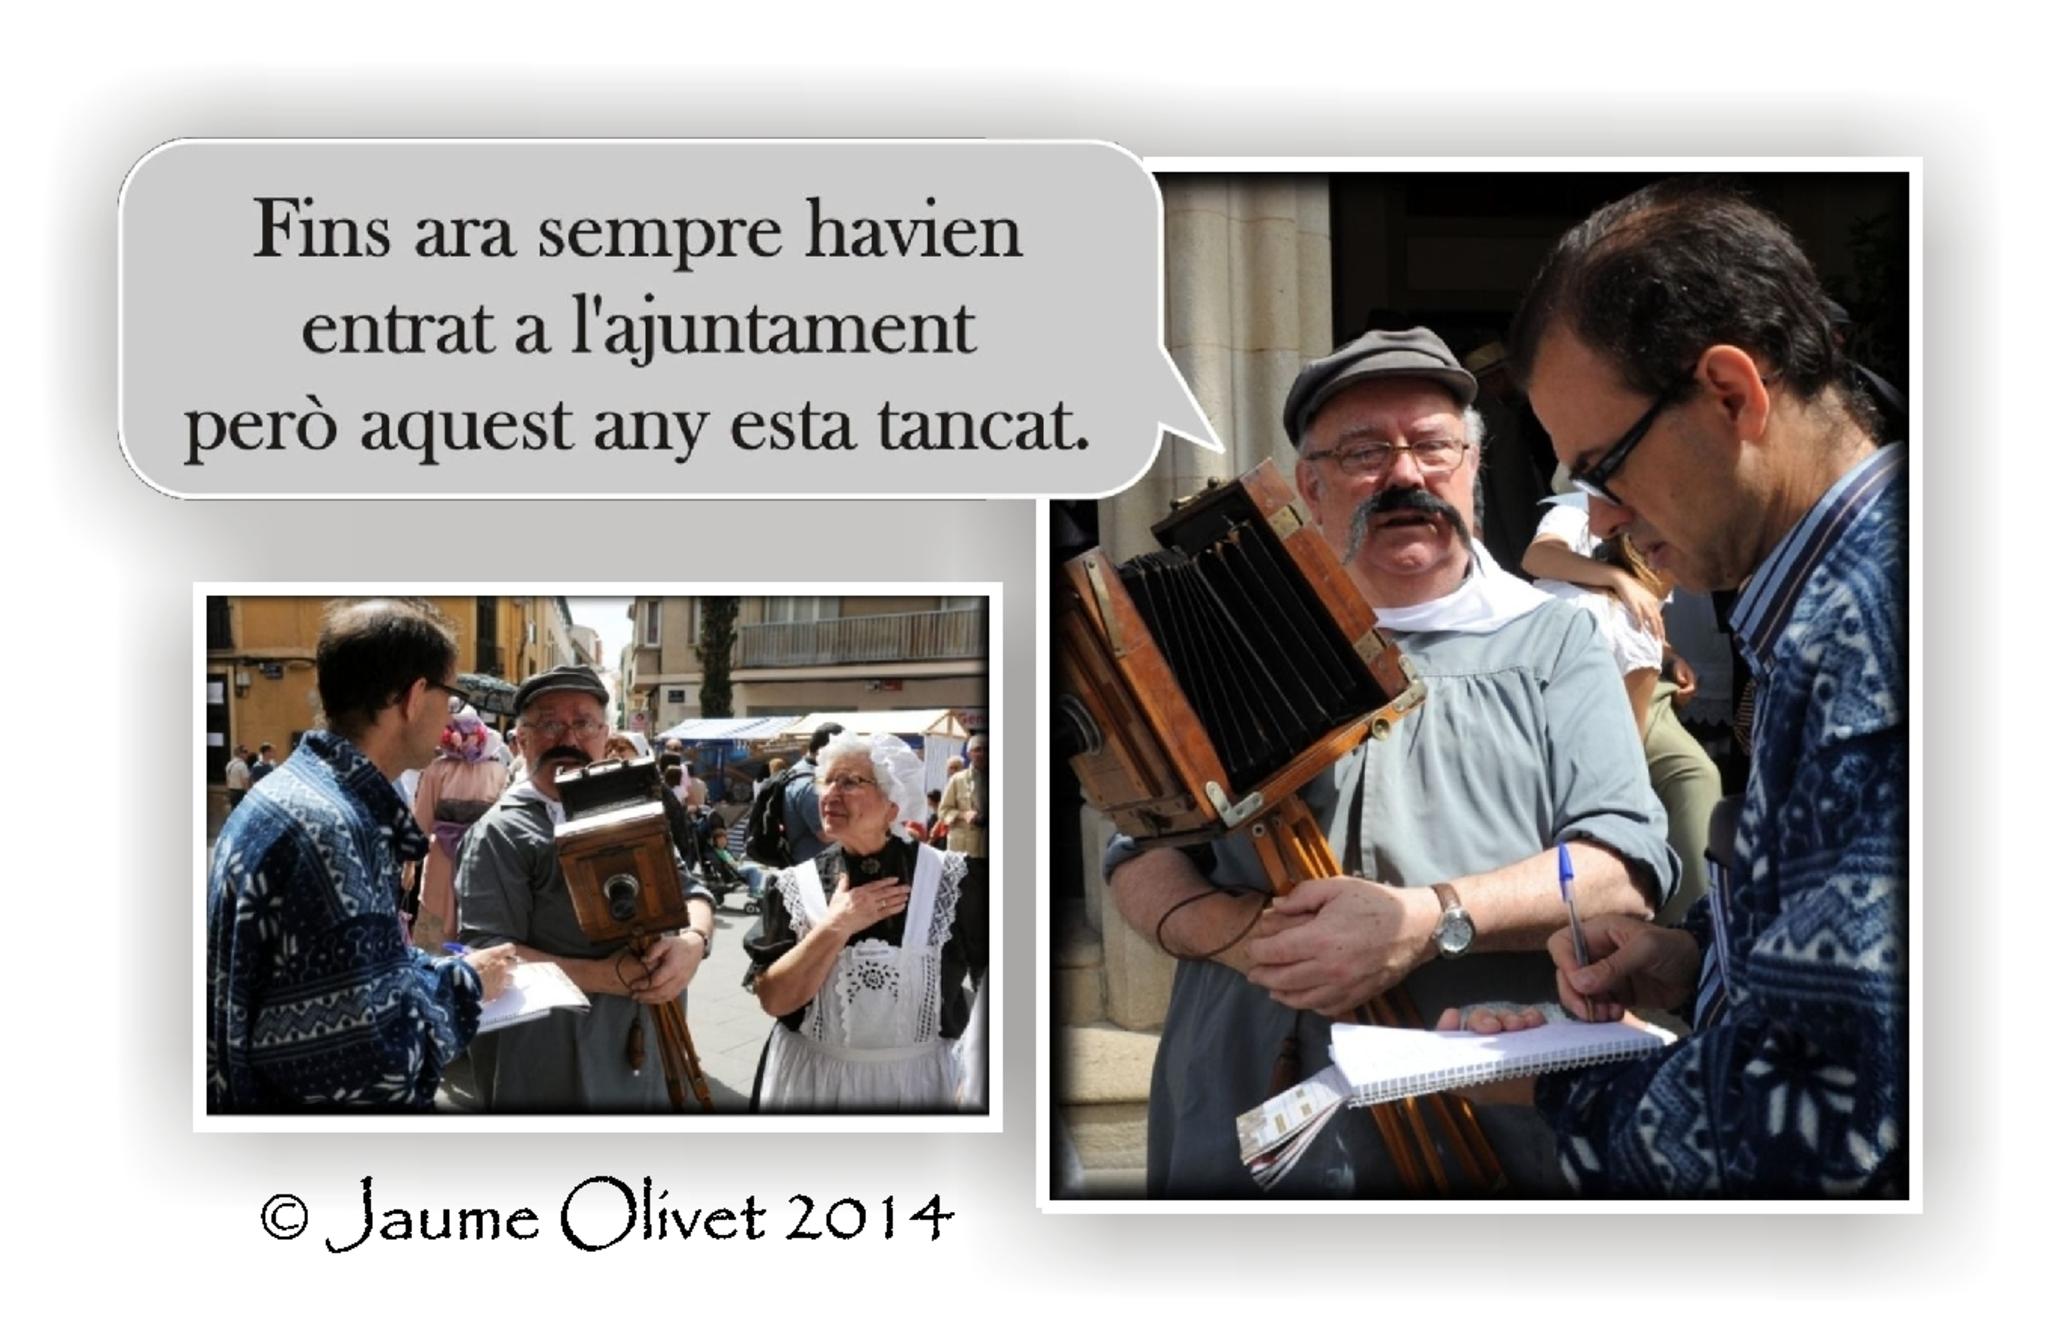 © Jaume Olivet 2014